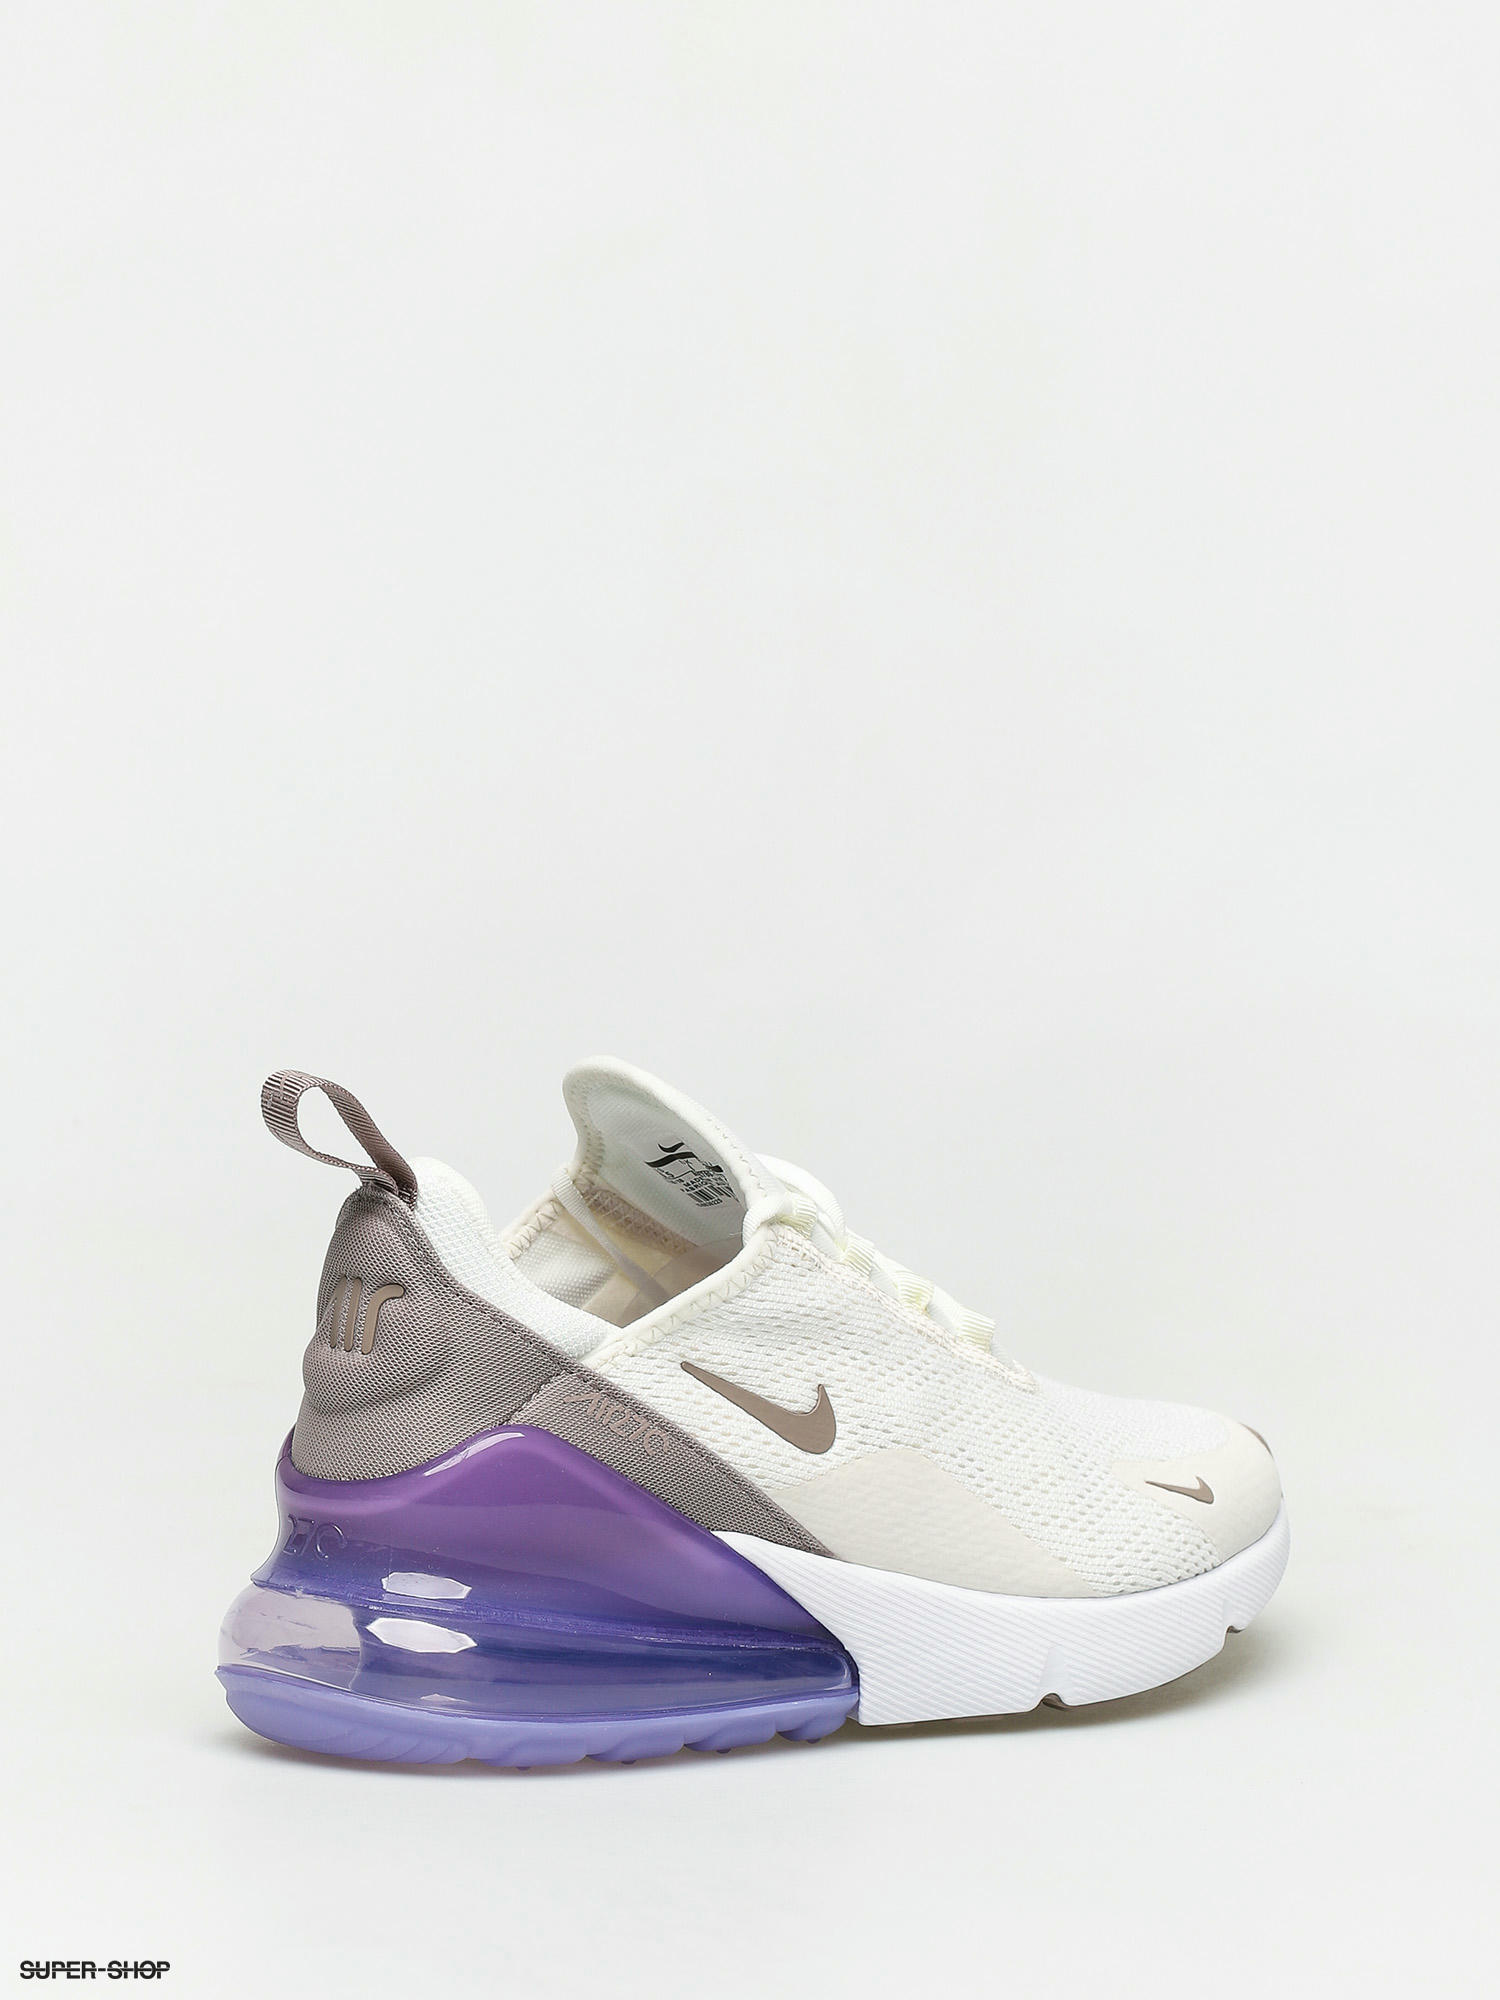 Senado Cortar Absay Nike Air Max 270 Shoes Wmn (sail/pumice space purple white)